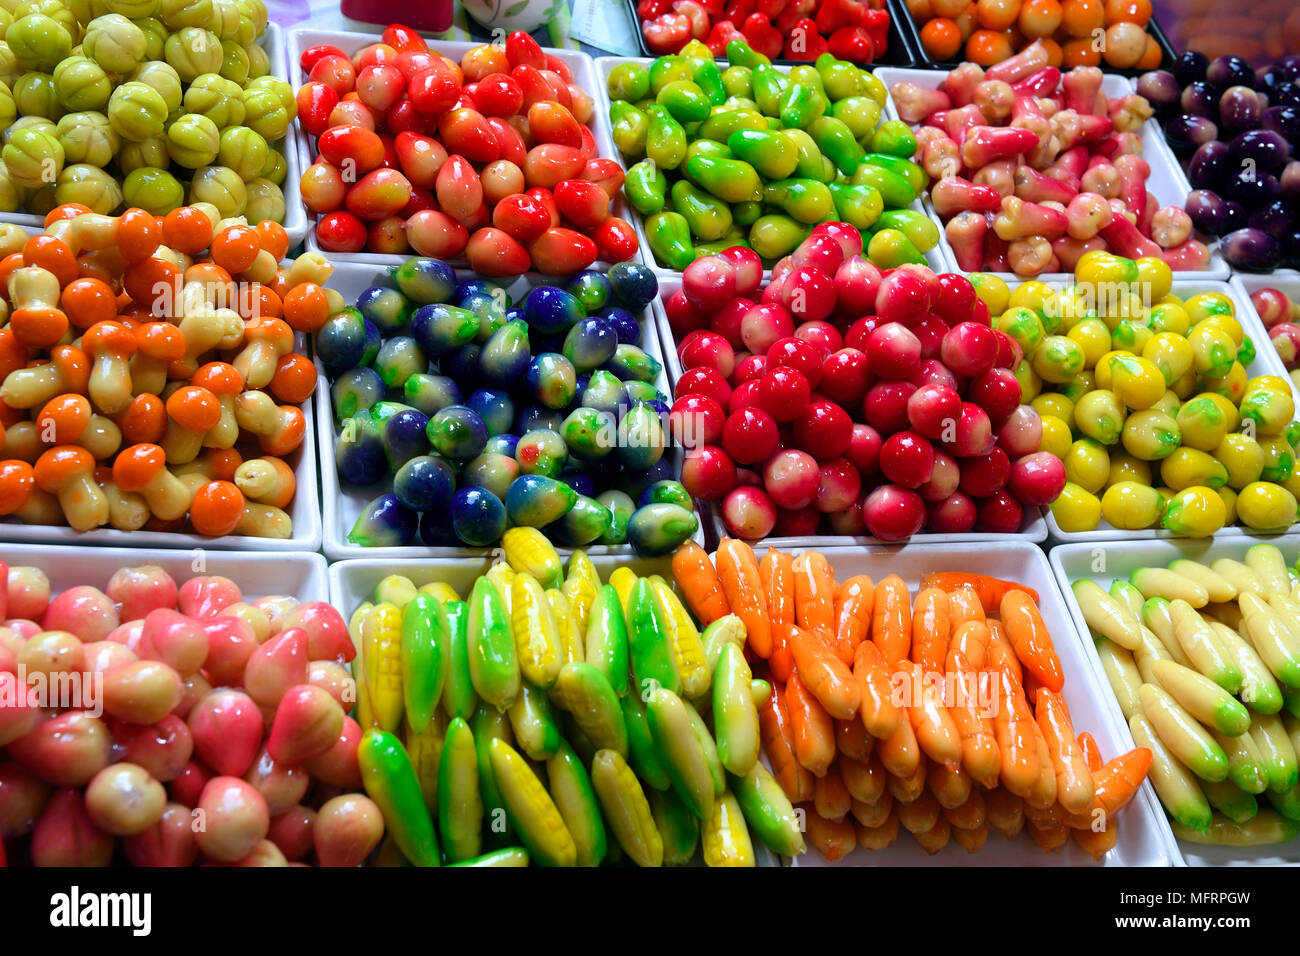 Display, colorful sweets made of sugar, Naka Weekend Market, Phuket, Thailand Stock Photo